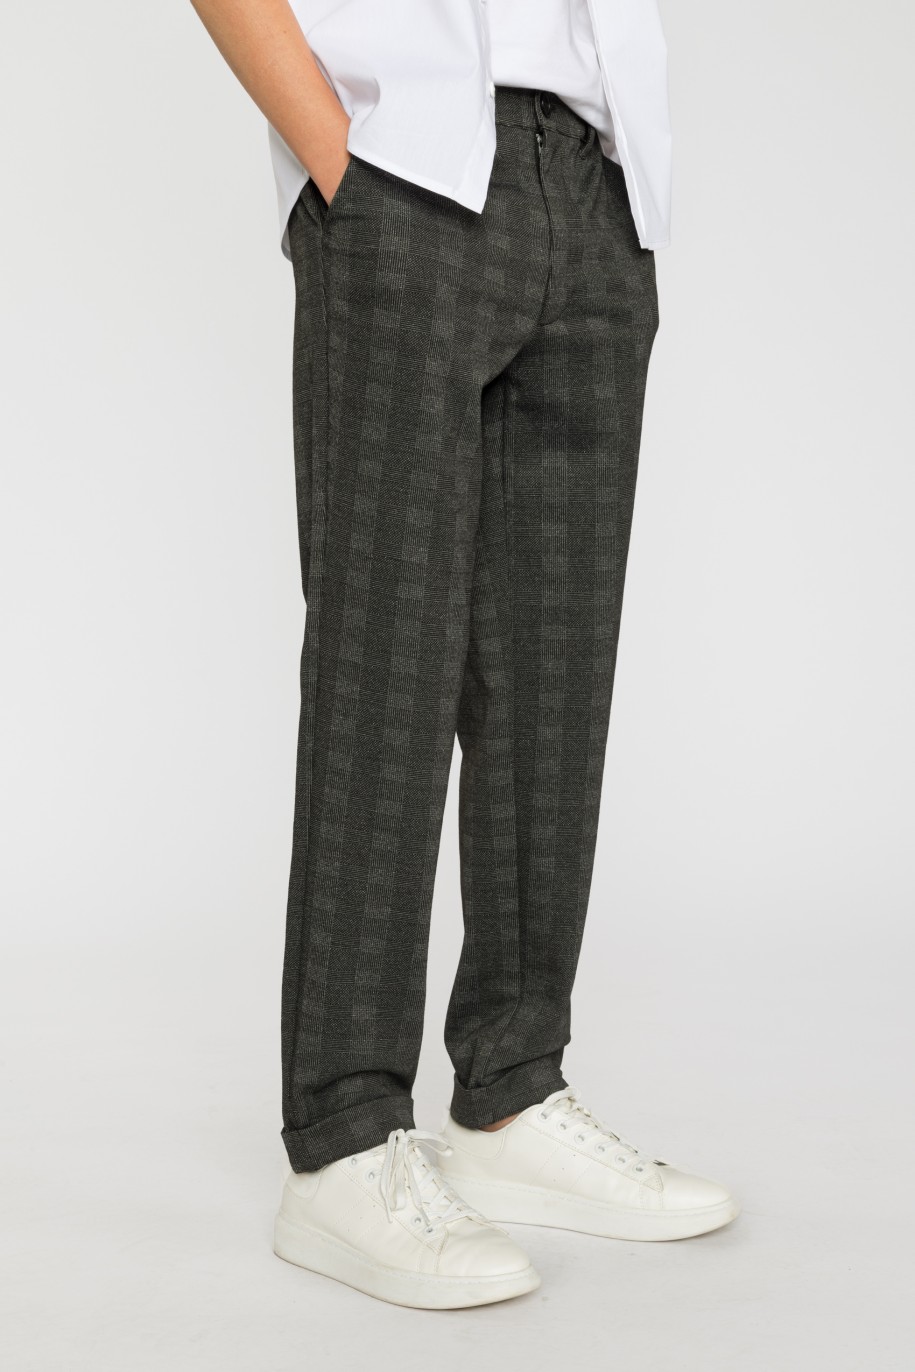 Eleganckie spodnie z dzianiny żakardowej dla chłopaka - 33596